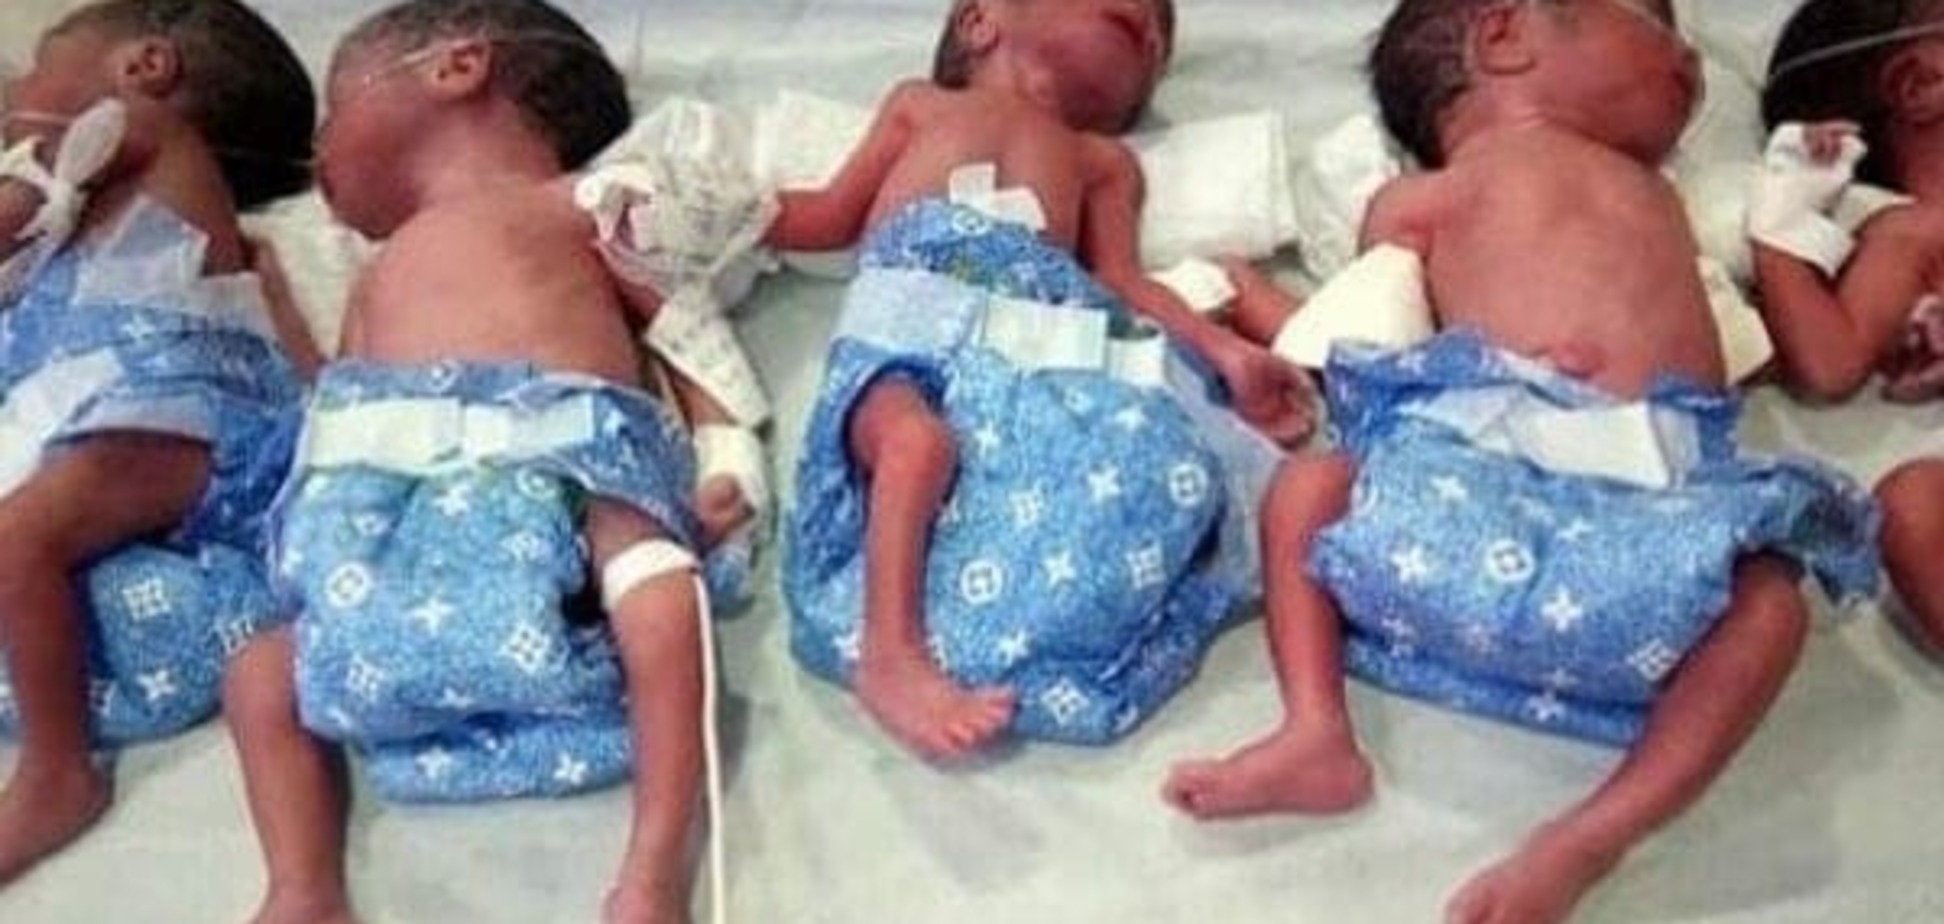 Женщина родила пять близнецов неожиданно для себя  (фото, видео)